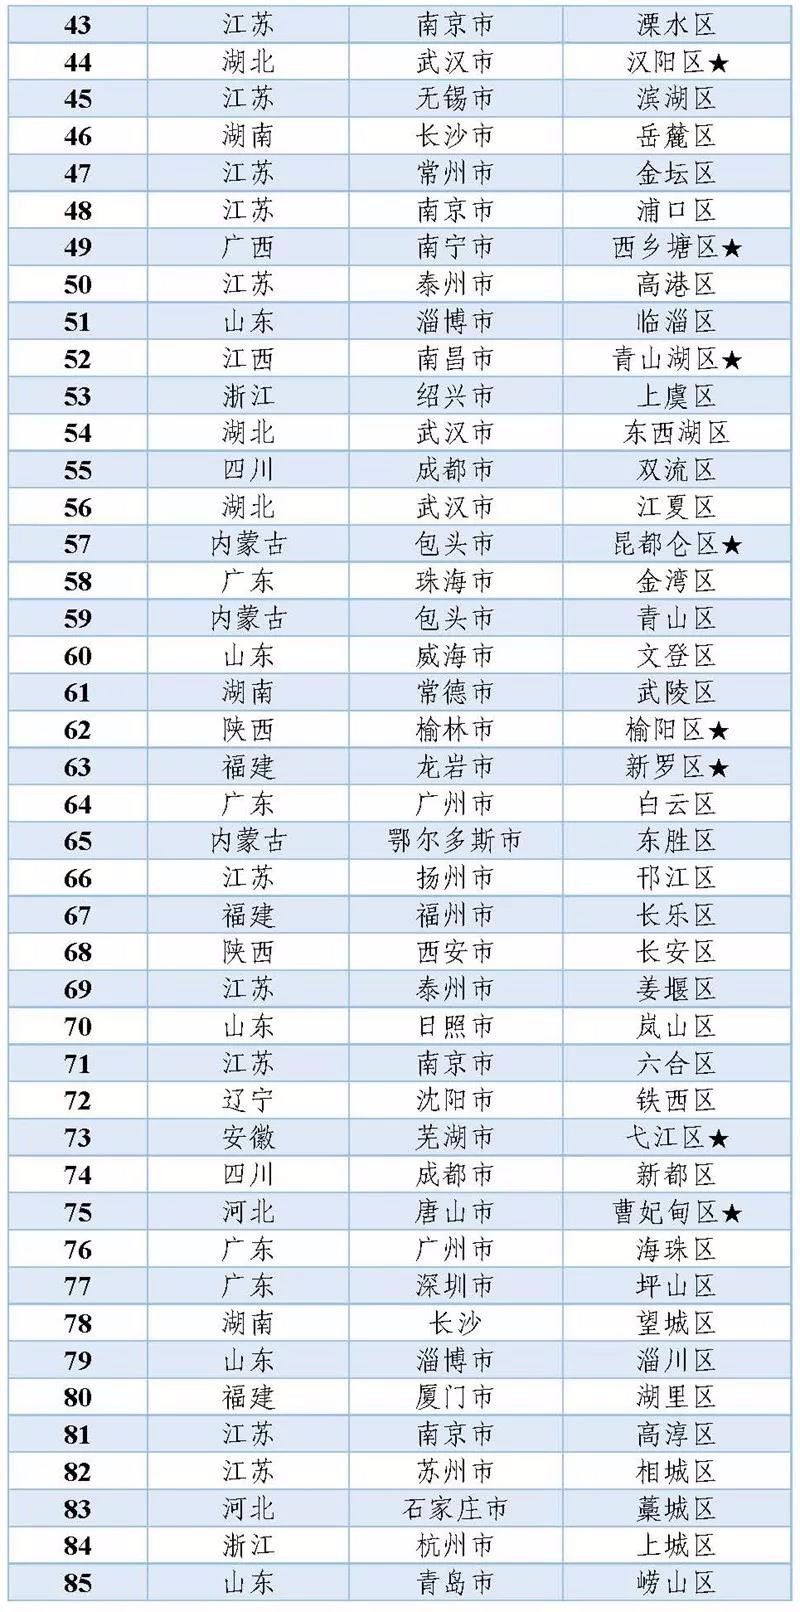 2019年最权z\u0001的排行_国际权威排名2019年中国10大品牌 第1到第10你用过